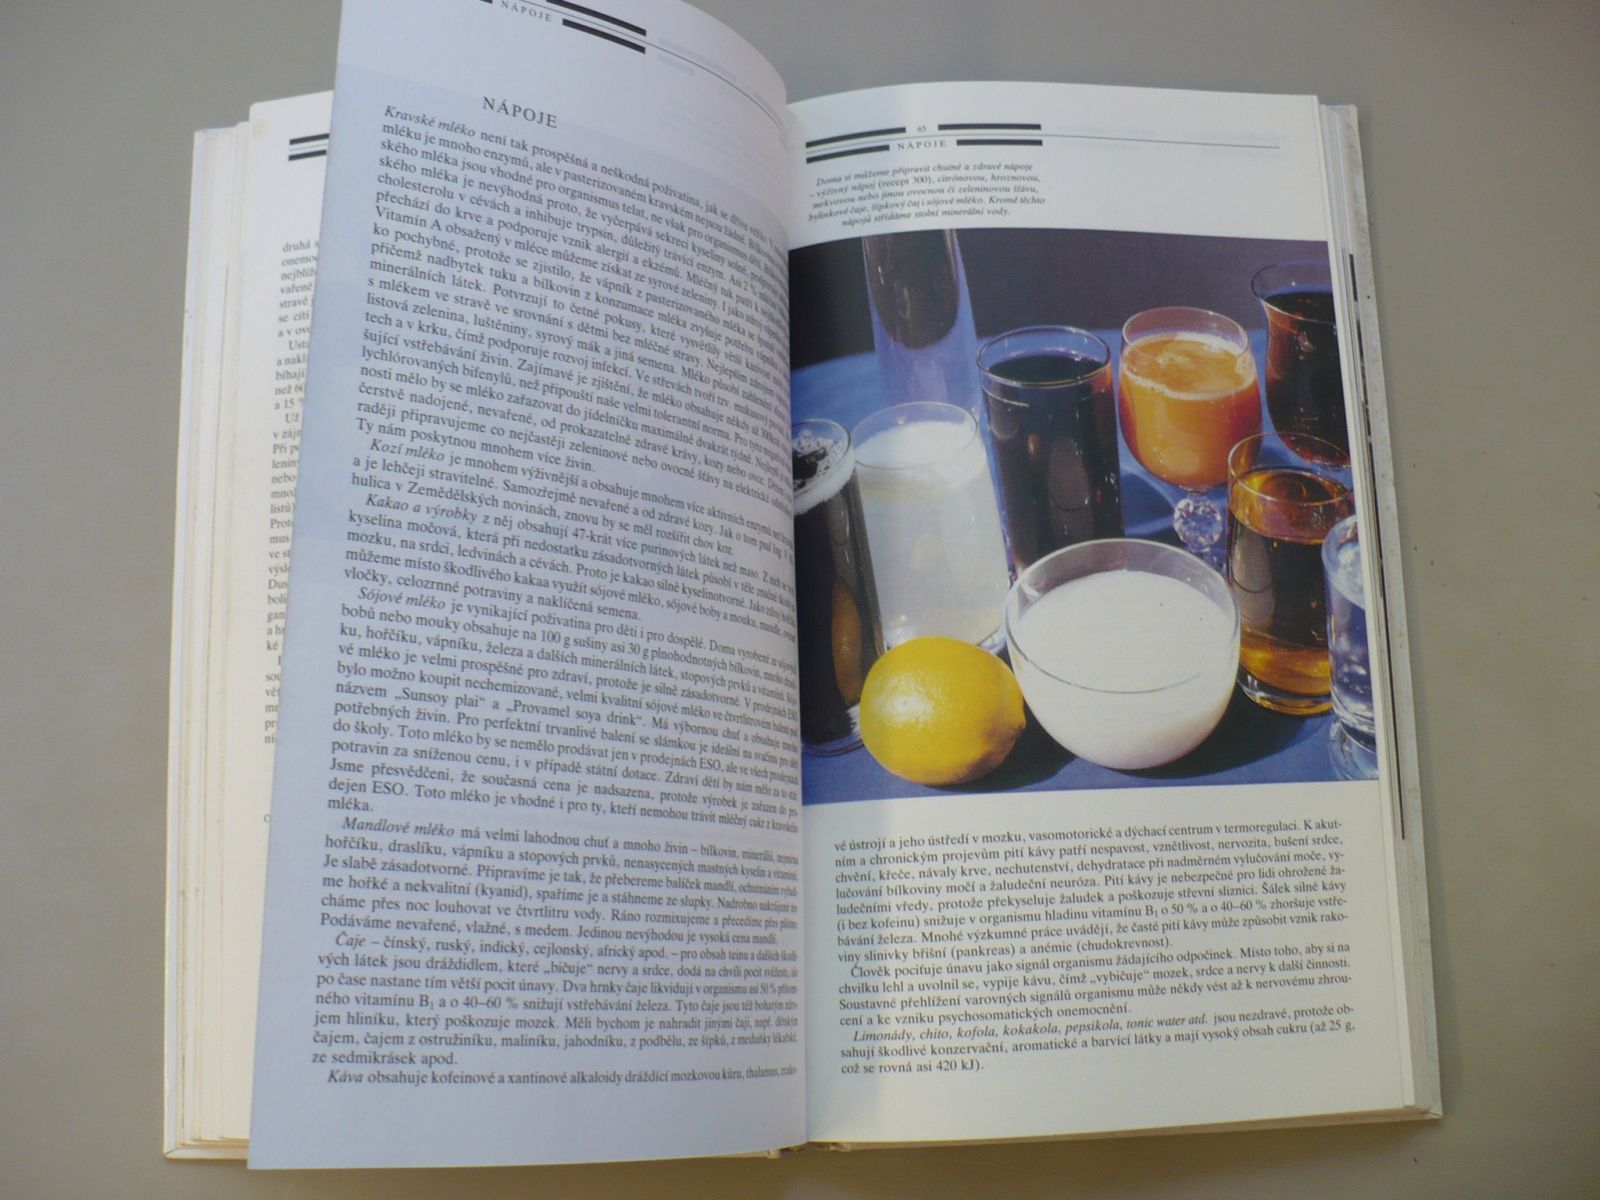 Karel Červený - Vegetariánská kuchařka (1991) Vegetariánství v teorii a v praxi